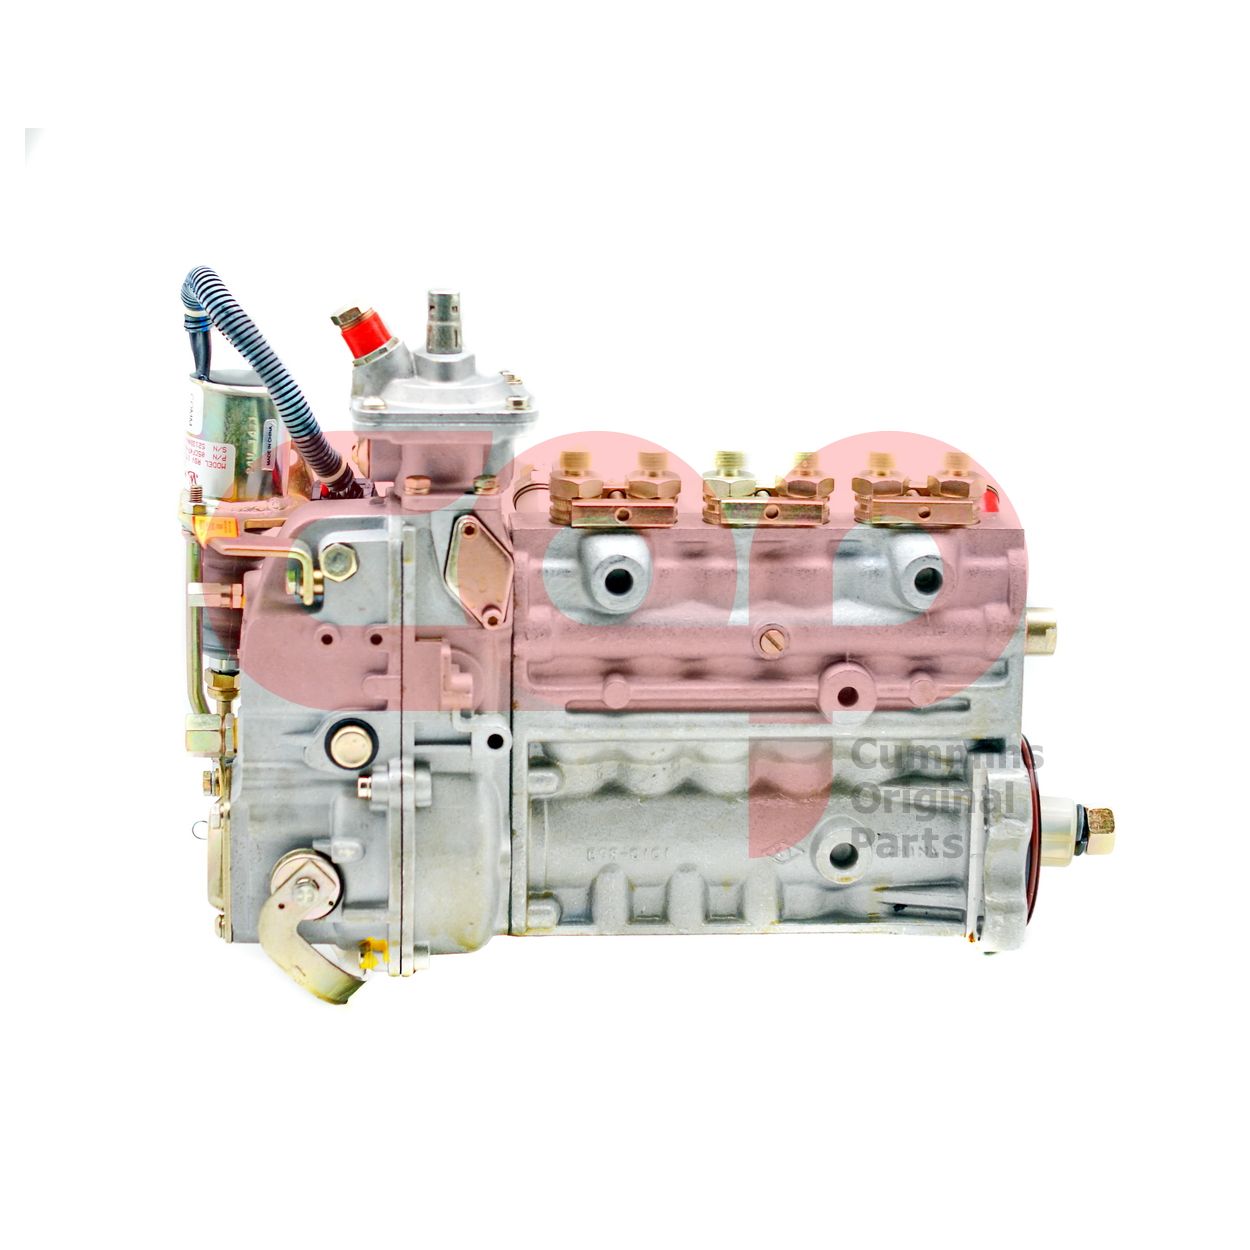 Топливный насос высокого давления (ТНВД) для двигателя Cummins B Series C3974599 